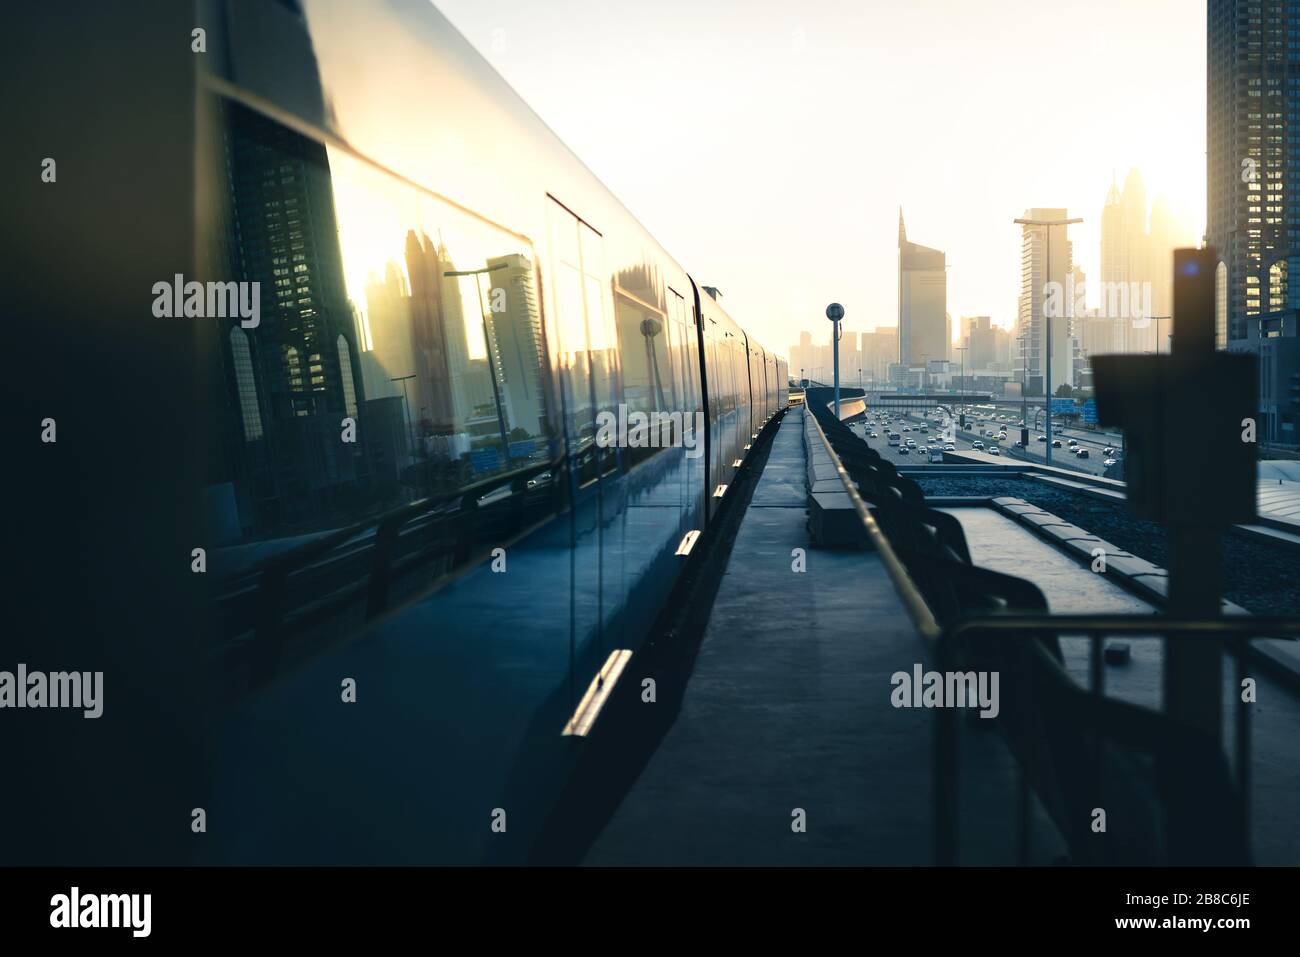 U-Bahn und U-Bahn in der Stadt. Futuristische moderne öffentliche Verkehrsmittel. Dubai Eisenbahnsystem bei Sonnenuntergang mit Wolkenkratzer-Gebäuden und Autoverkehr. Stockfoto